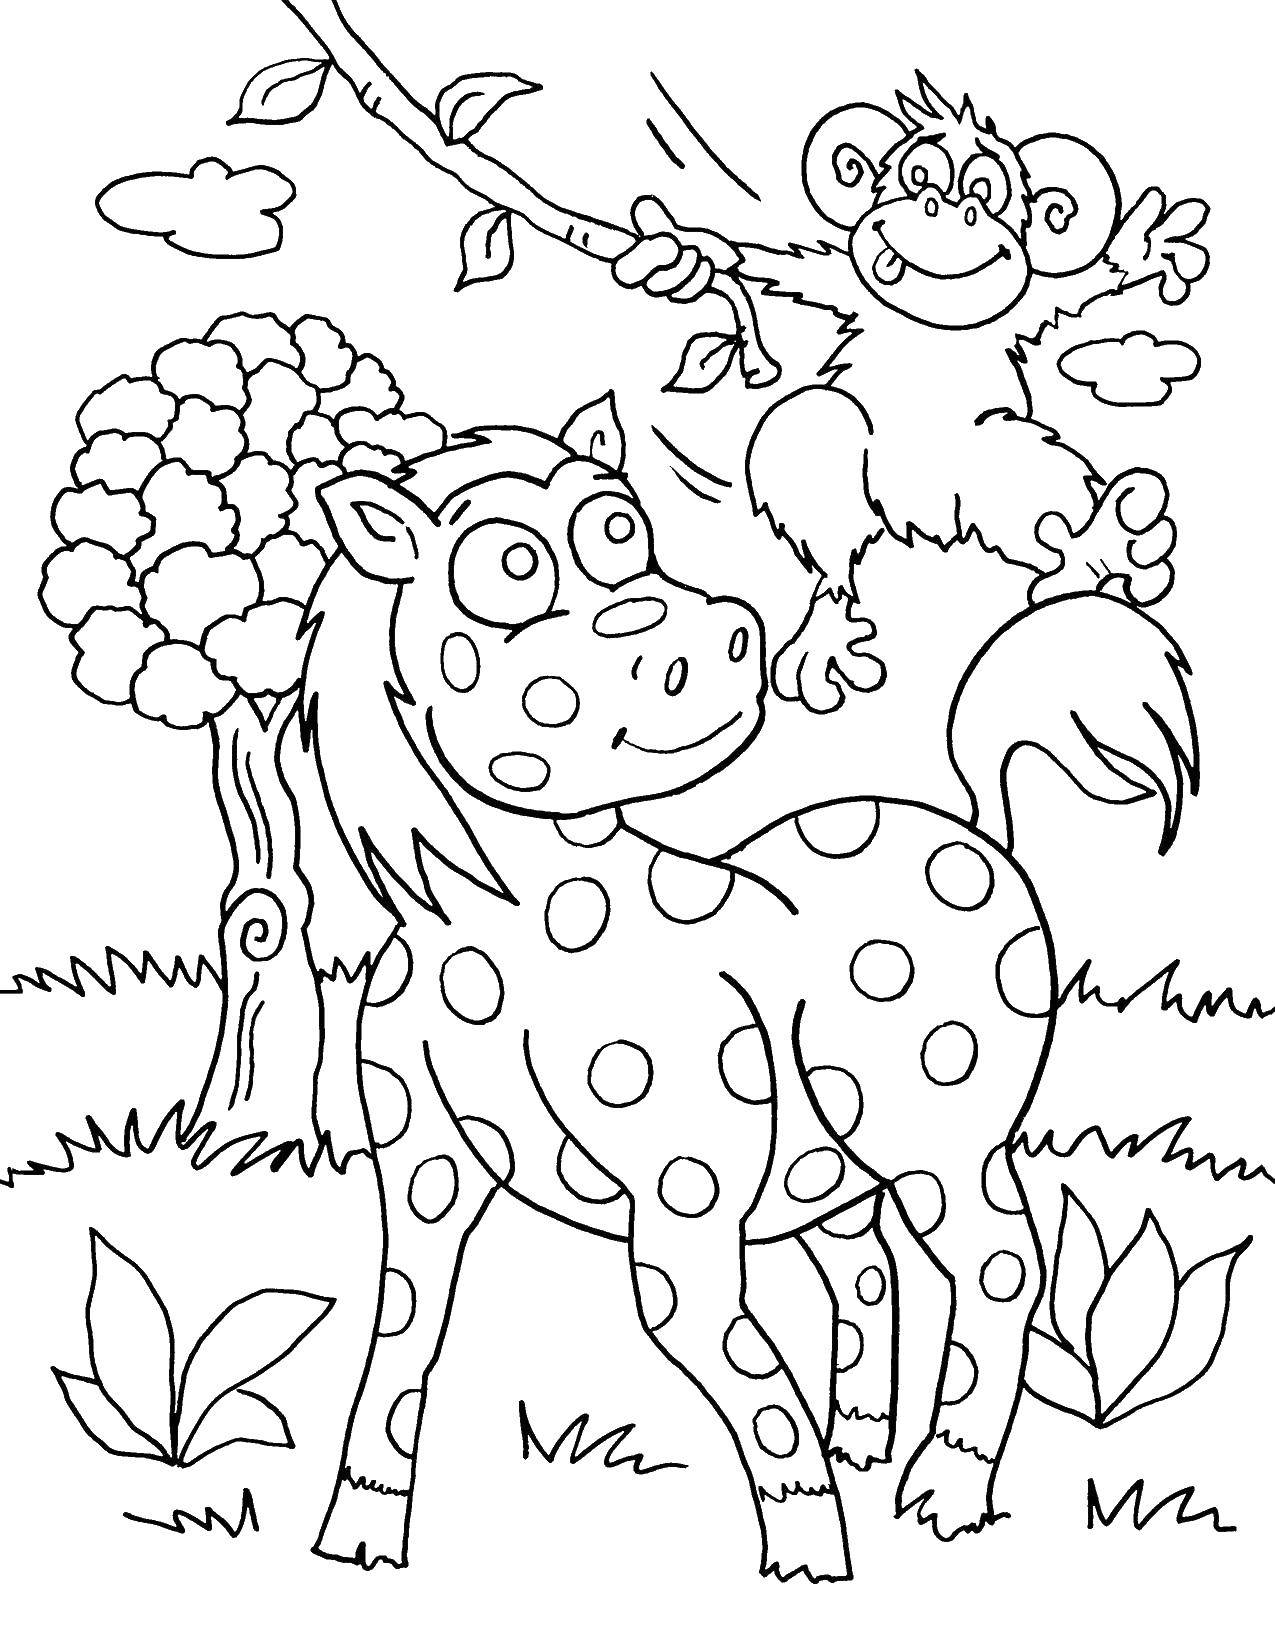 Название: Раскраска Лошадь в горошек и обезьянка. Категория: Дикие животные. Теги: лиана, обезьянка, лошадь, дерево.